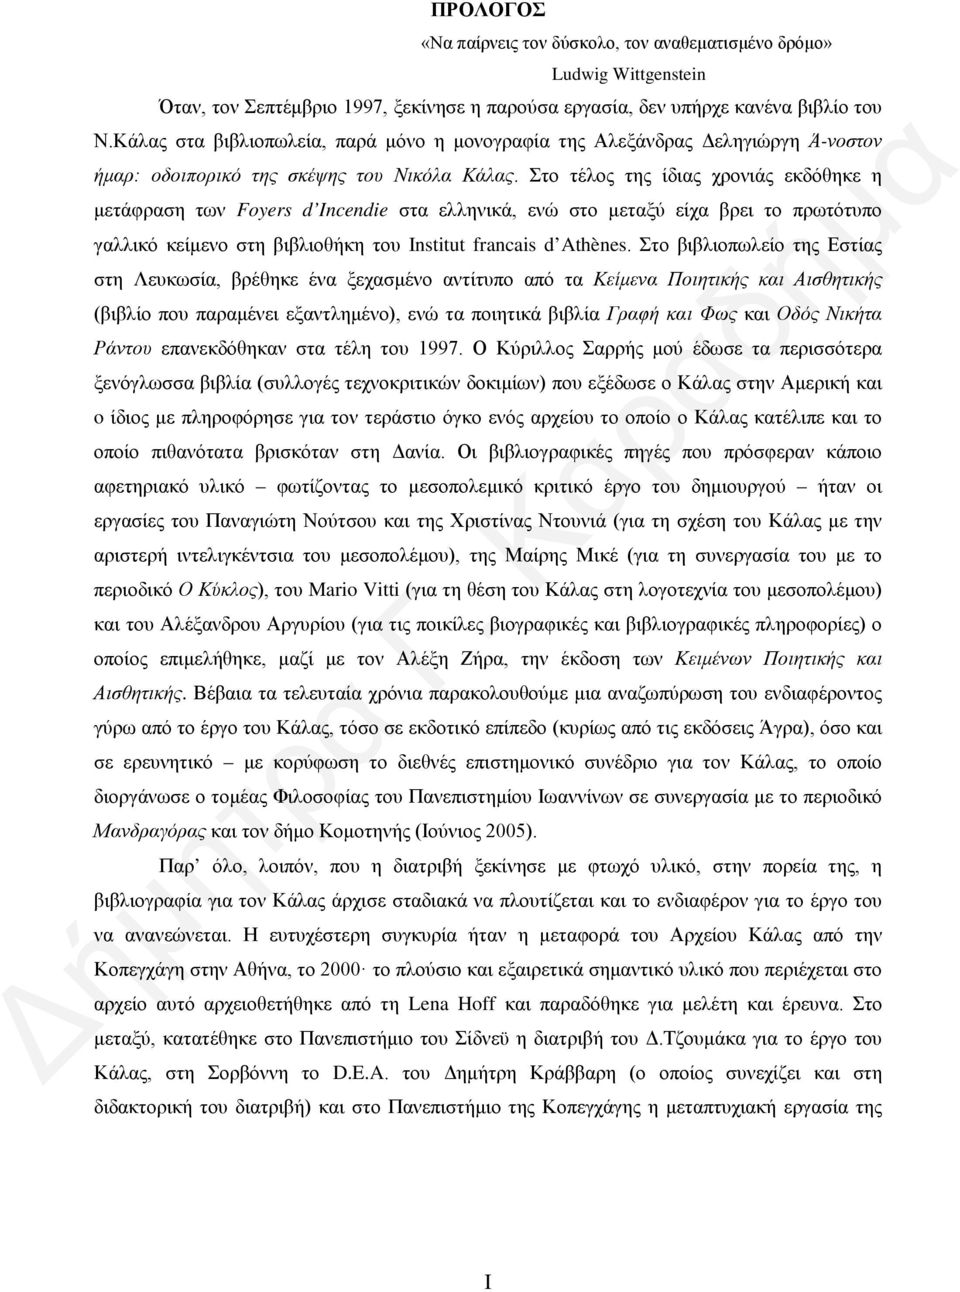 Στο τέλος της ίδιας χρονιάς εκδόθηκε η μετάφραση των Foyers d Incendie στα ελληνικά, ενώ στο μεταξύ είχα βρει το πρωτότυπο γαλλικό κείμενο στη βιβλιοθήκη του Institut francais d Athènes.